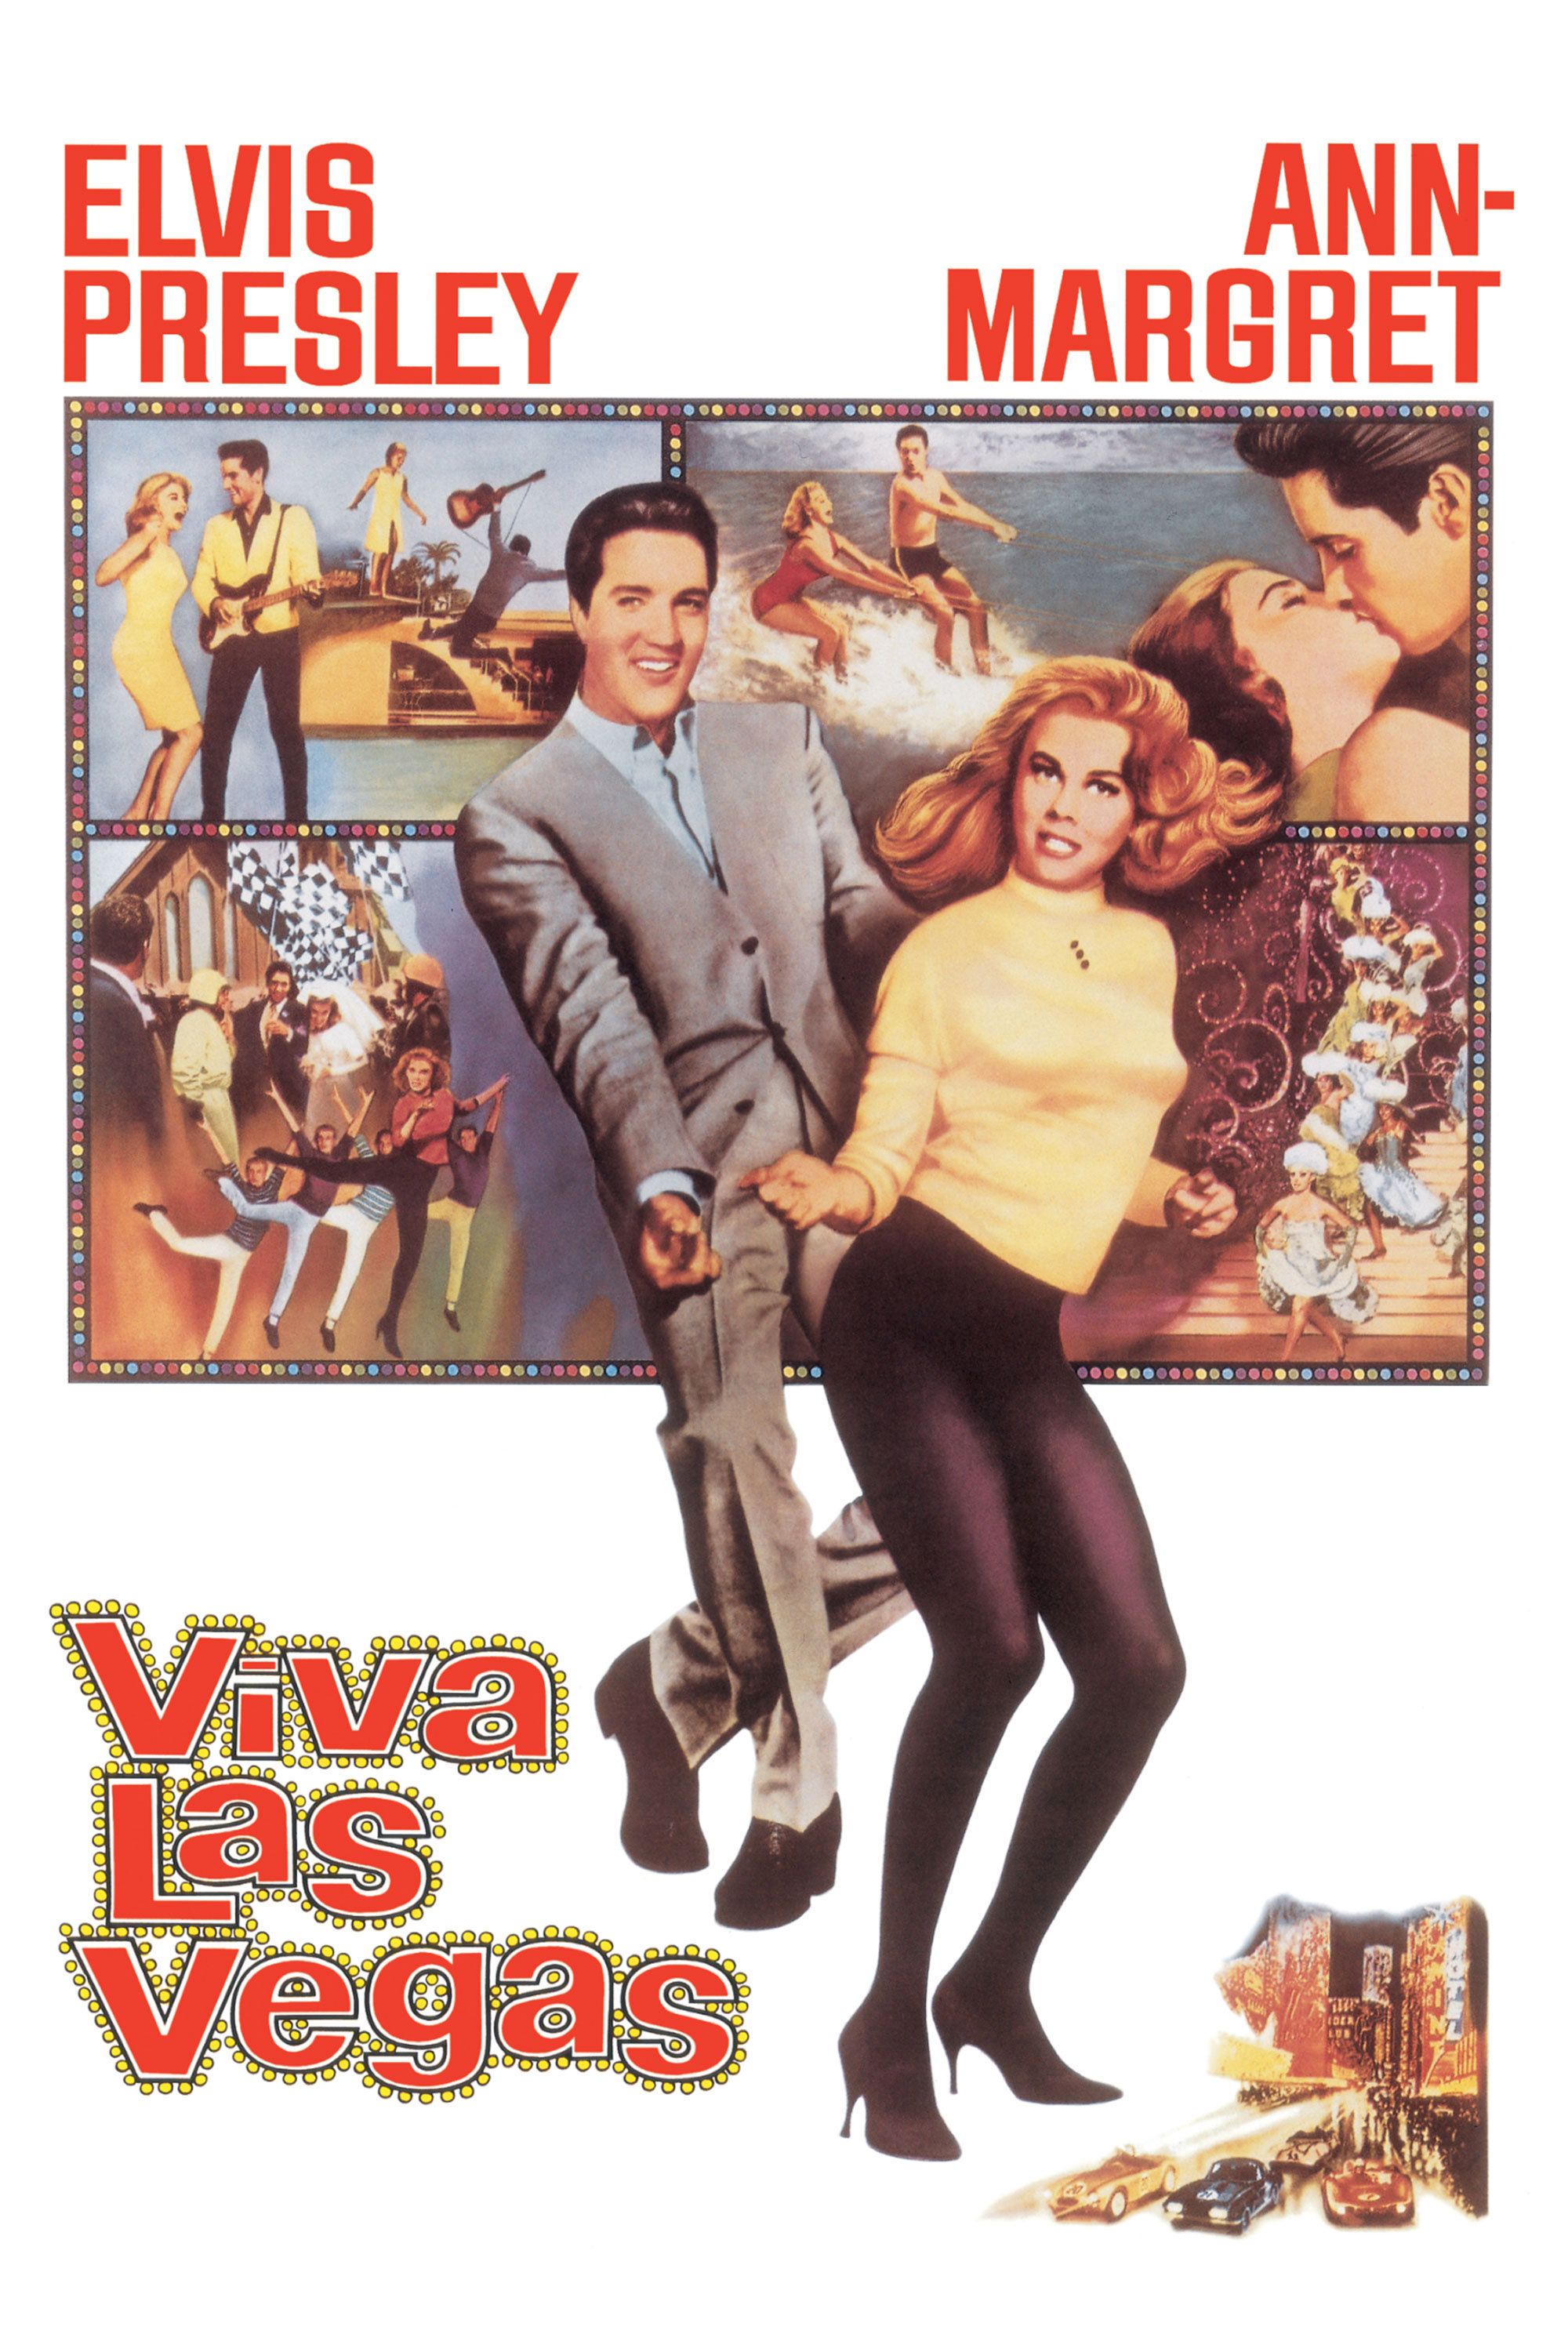 Elvis Presley and Ann-Margret star in Viva Las Vegas